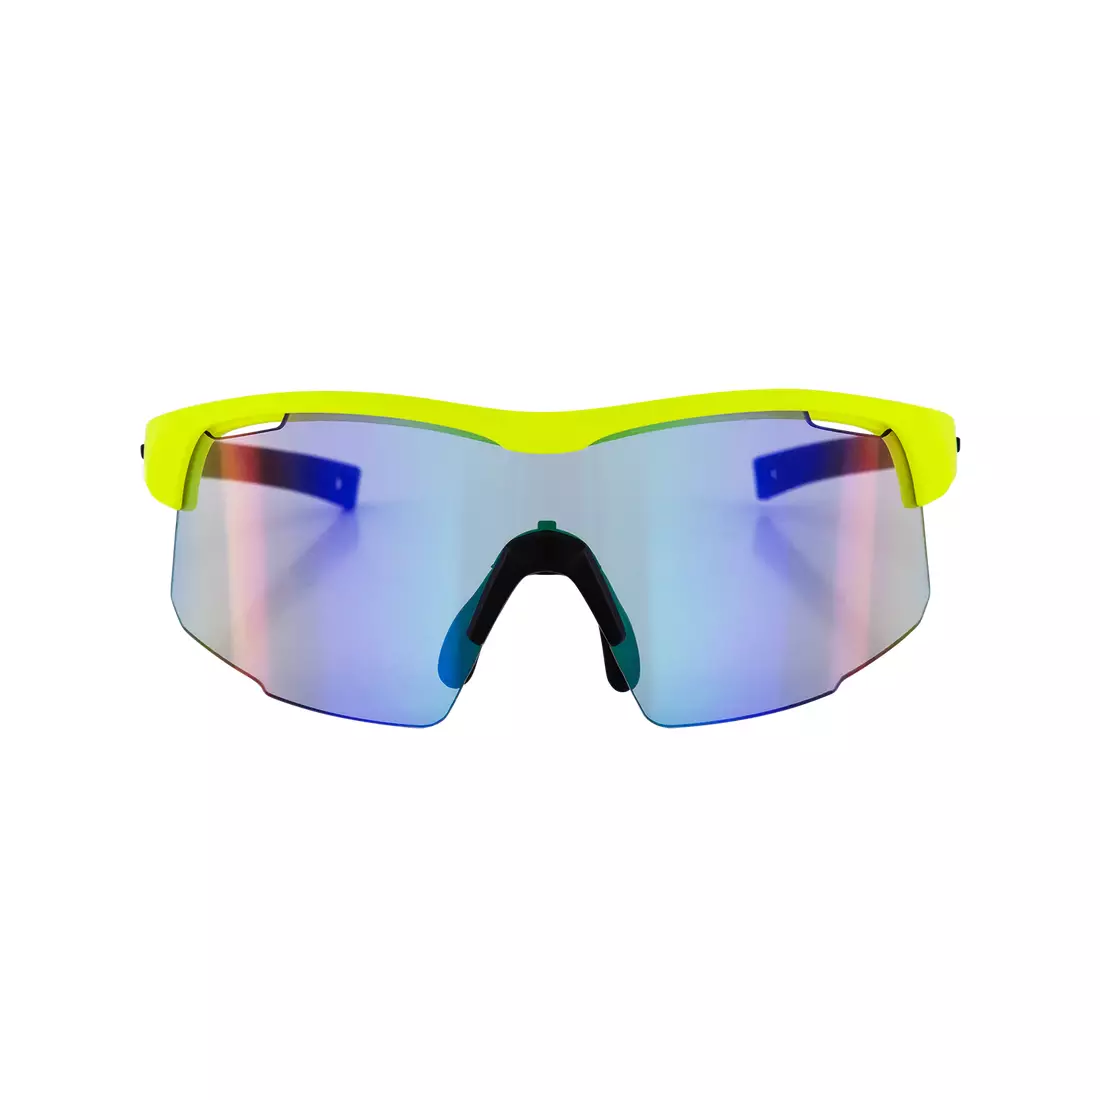 ROGELLI sportovní brýle s vyměnitelnými skly PULSE fluor 009.267